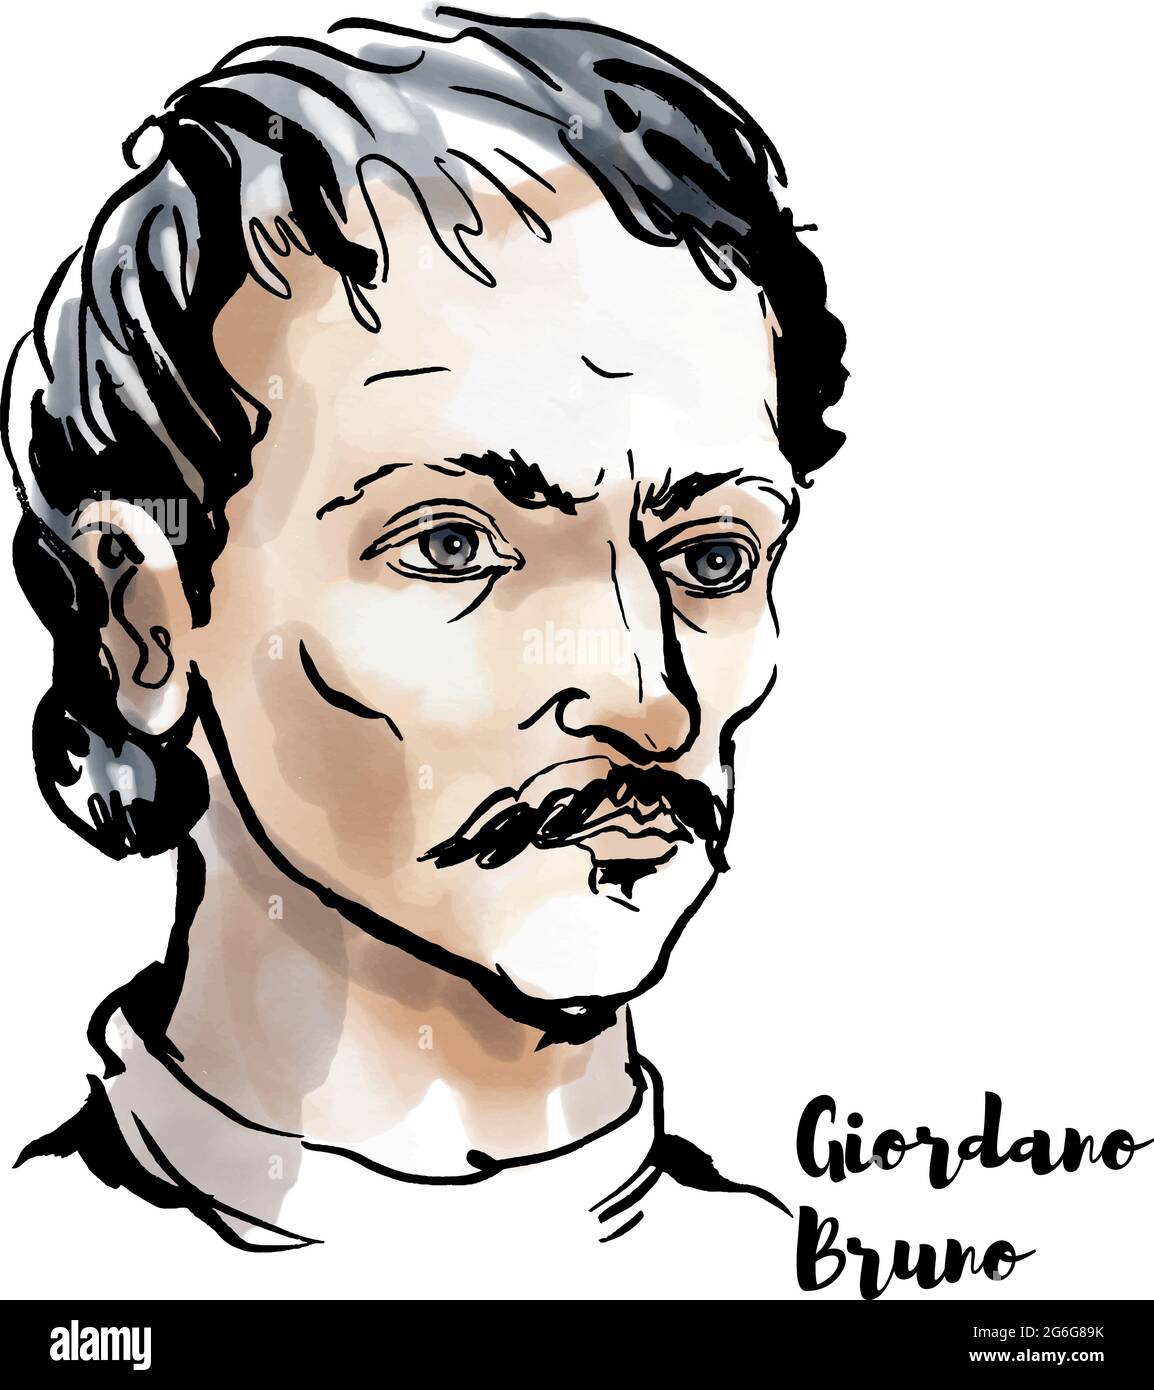 Giordano Bruno ritratto vettoriale acquerello con contorni a inchiostro. Frate, filosofo, matematico, poeta e teorico cosmologico. Illustrazione Vettoriale